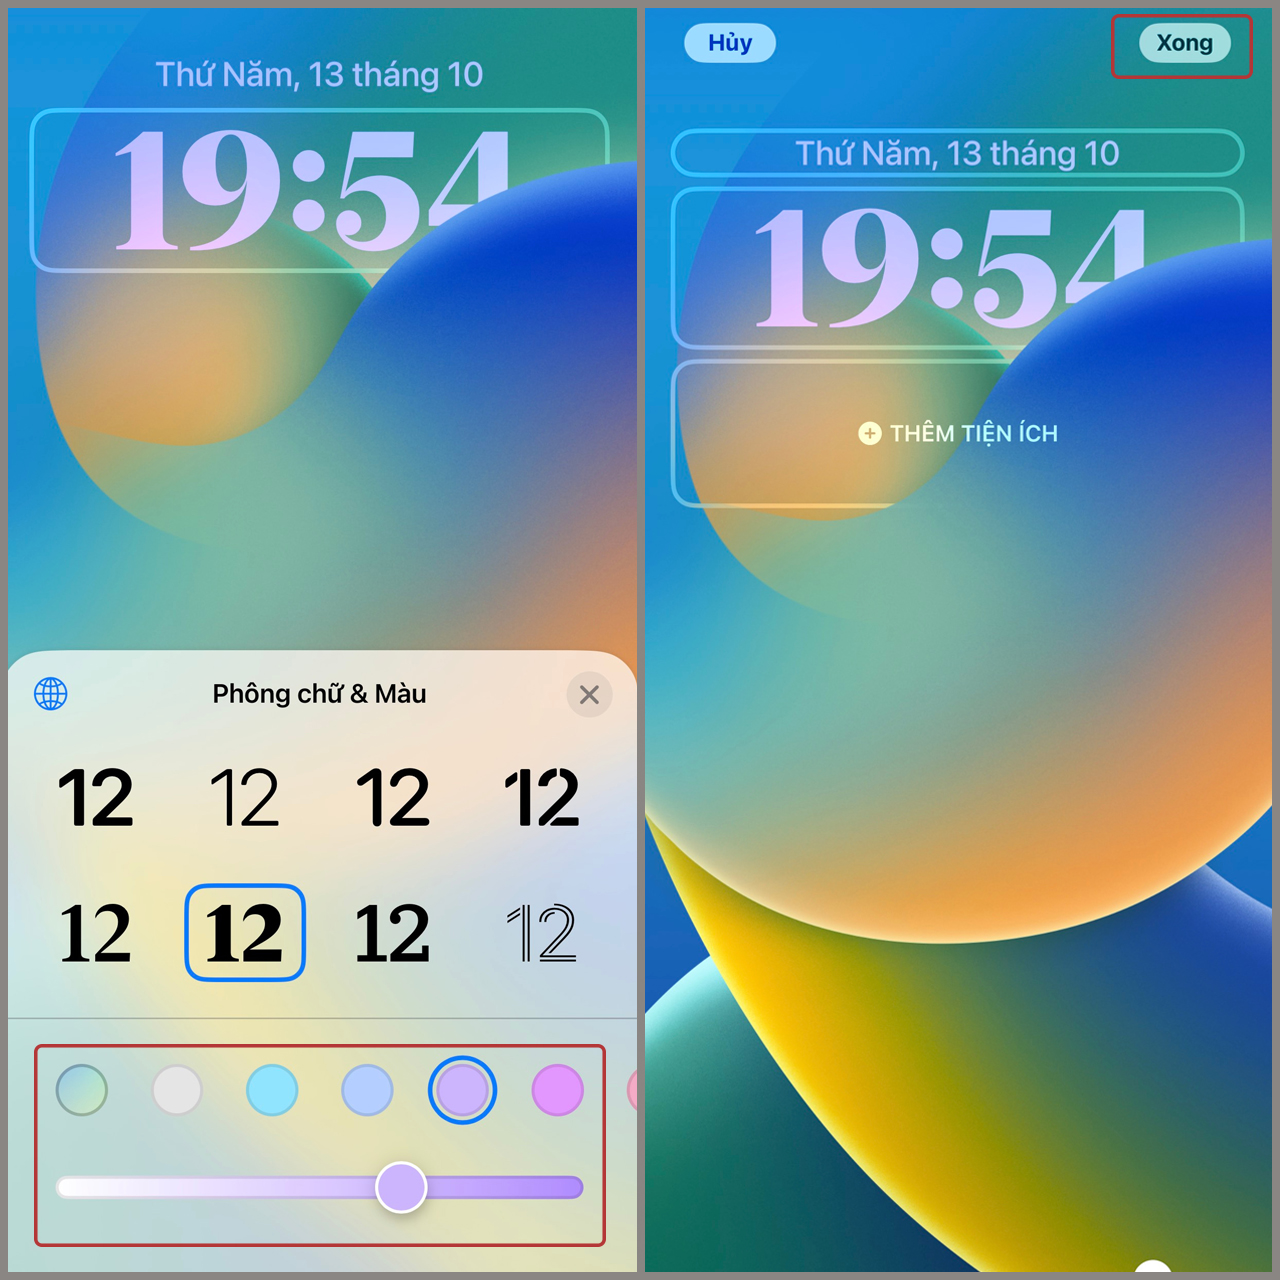 Đổi kiểu đồng hồ trên iOS 16 để điện thoại sinh động hơn. iOS 16 mang đến cho bạn nhiều giao diện đồng hồ độc đáo để bạn dễ dàng lựa chọn và tùy biến. Với các tiện ích mới và tính năng tối ưu hóa, bạn có thể chọn kiểu đồng hồ mà phù hợp với sở thích của bạn. Việc đổi kiểu đồng hồ trên iOS 16 cũng giúp cho điện thoại của bạn trông thú vị hơn và mang lại trải nghiệm tuyệt vời.